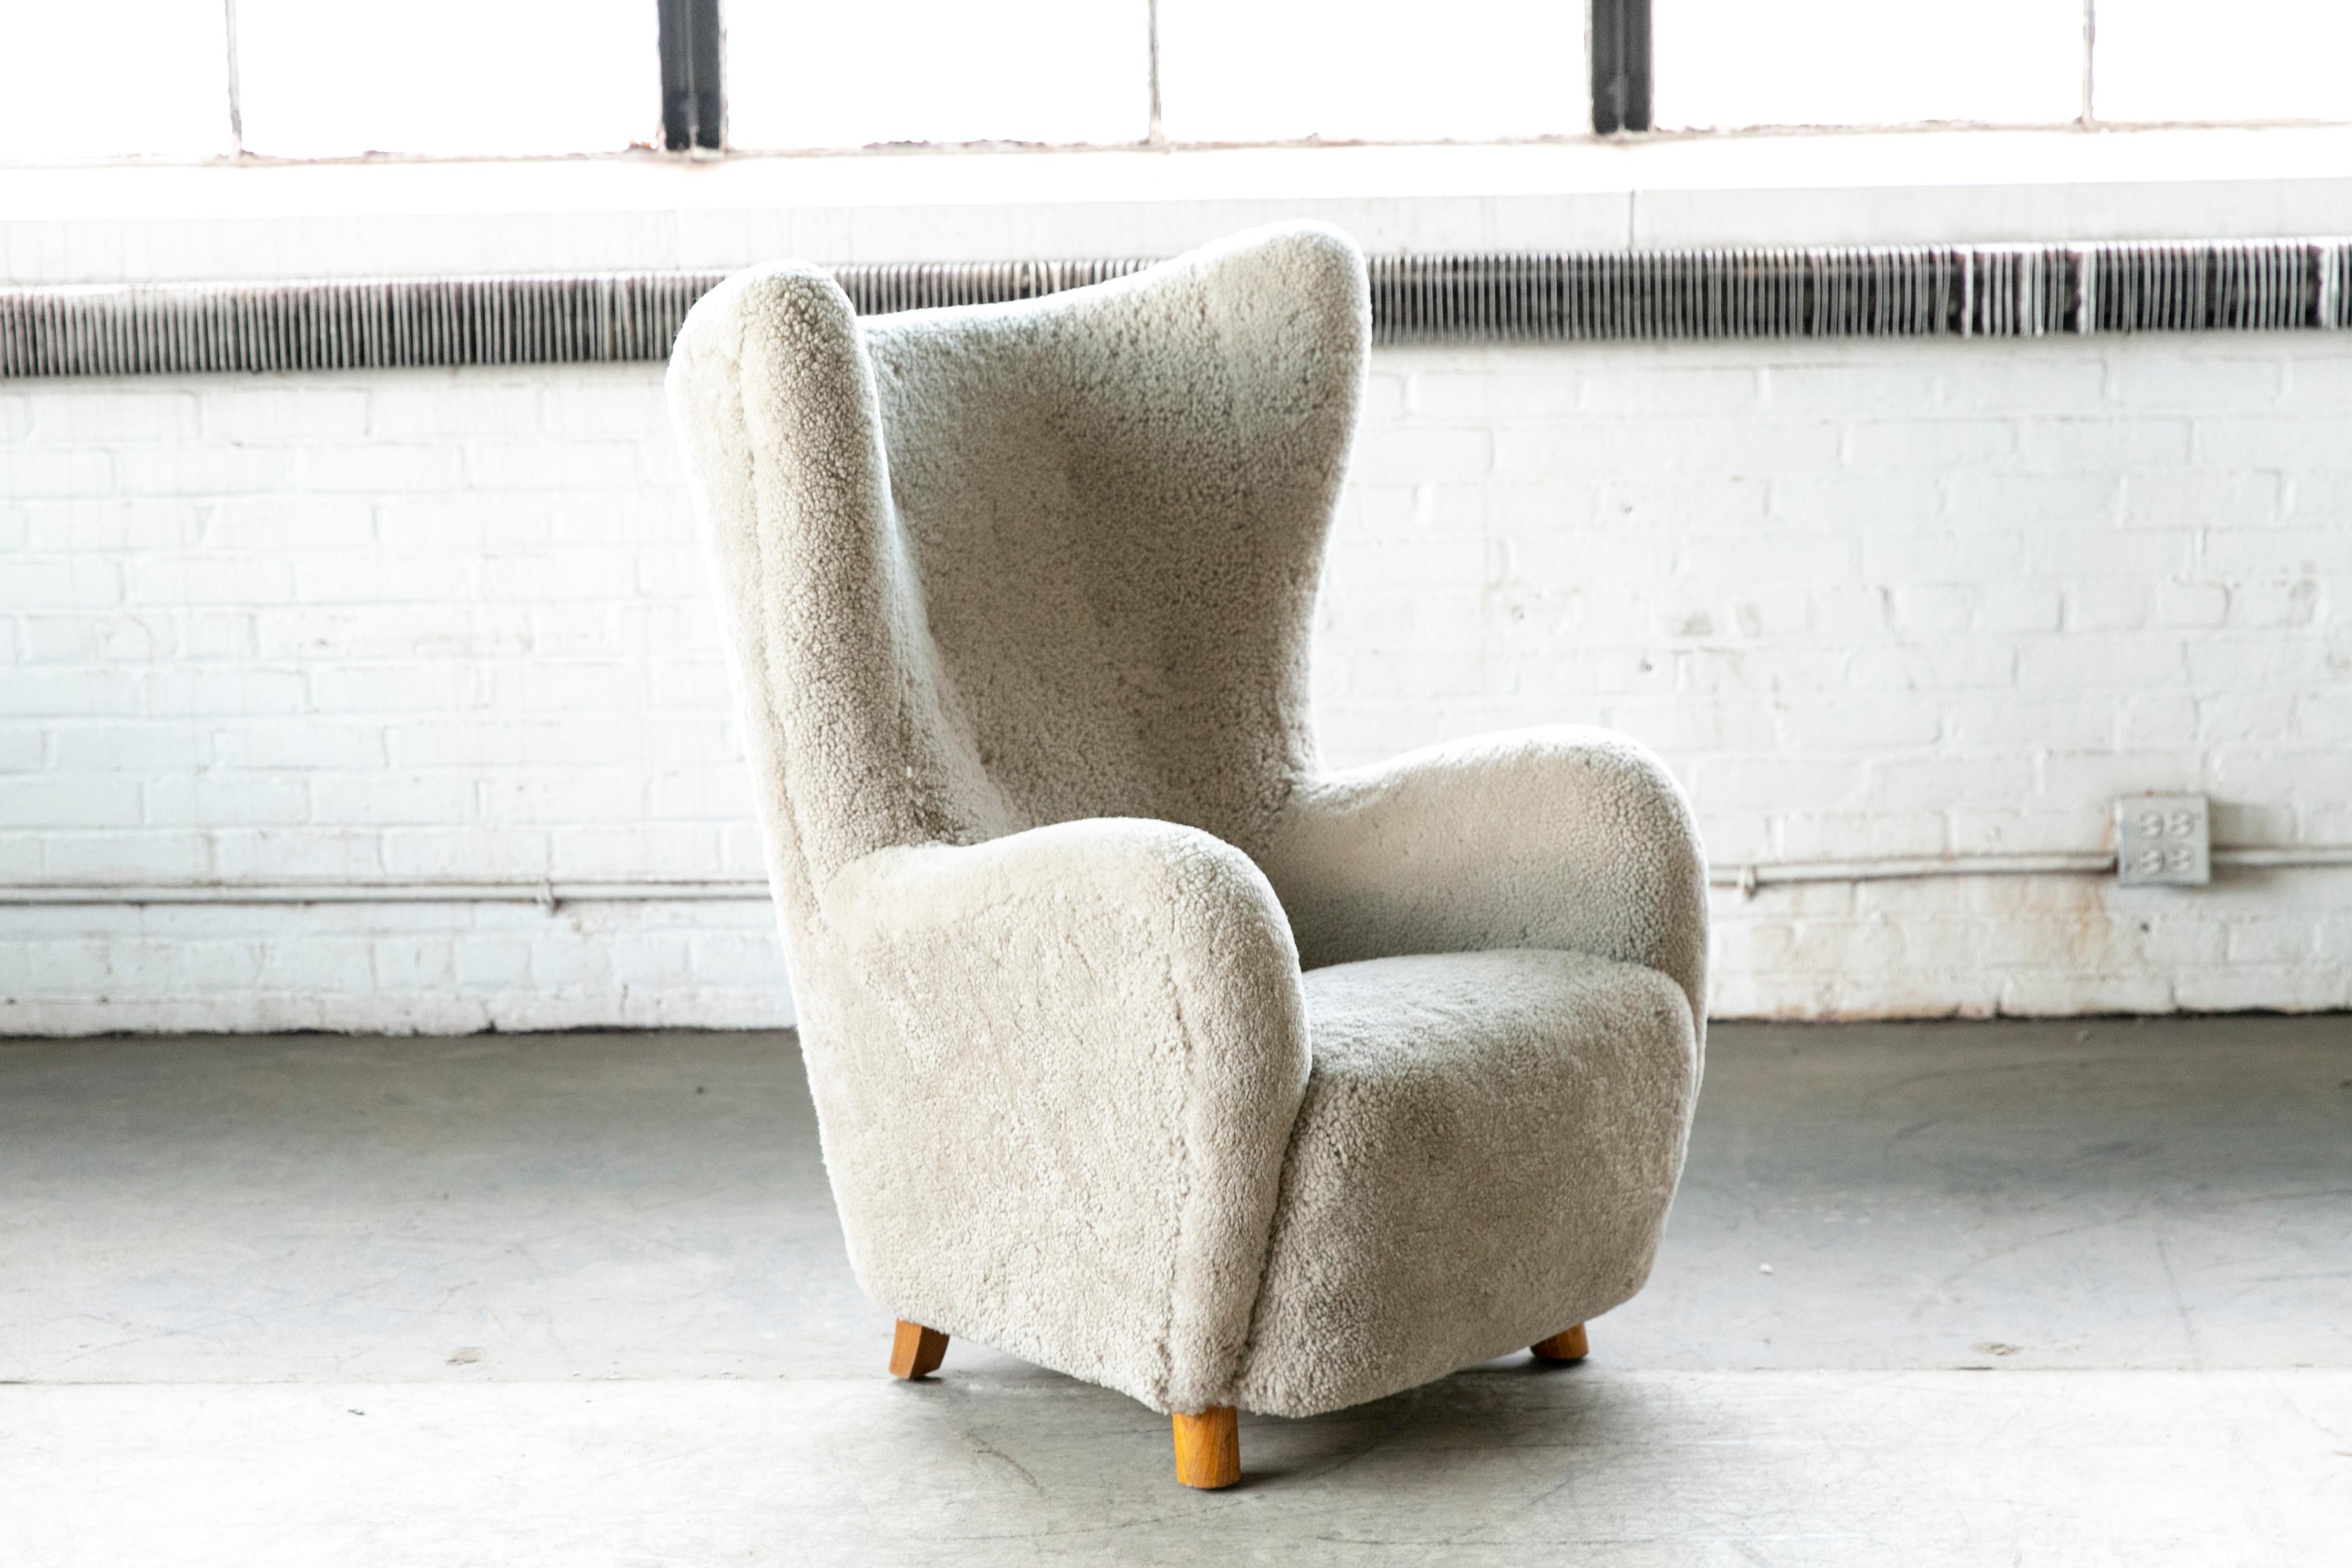 Schöne Flemming Lassen zugeschrieben hohe Rückenlehne Lounge-Stuhl gemacht, um 1940. Dieser ikonische Sessel ist wahrscheinlich einer der perfektesten Hochlehner, die je entworfen wurden. Perfektes Statement-Stück mit ultra-eleganter, sinnlicher